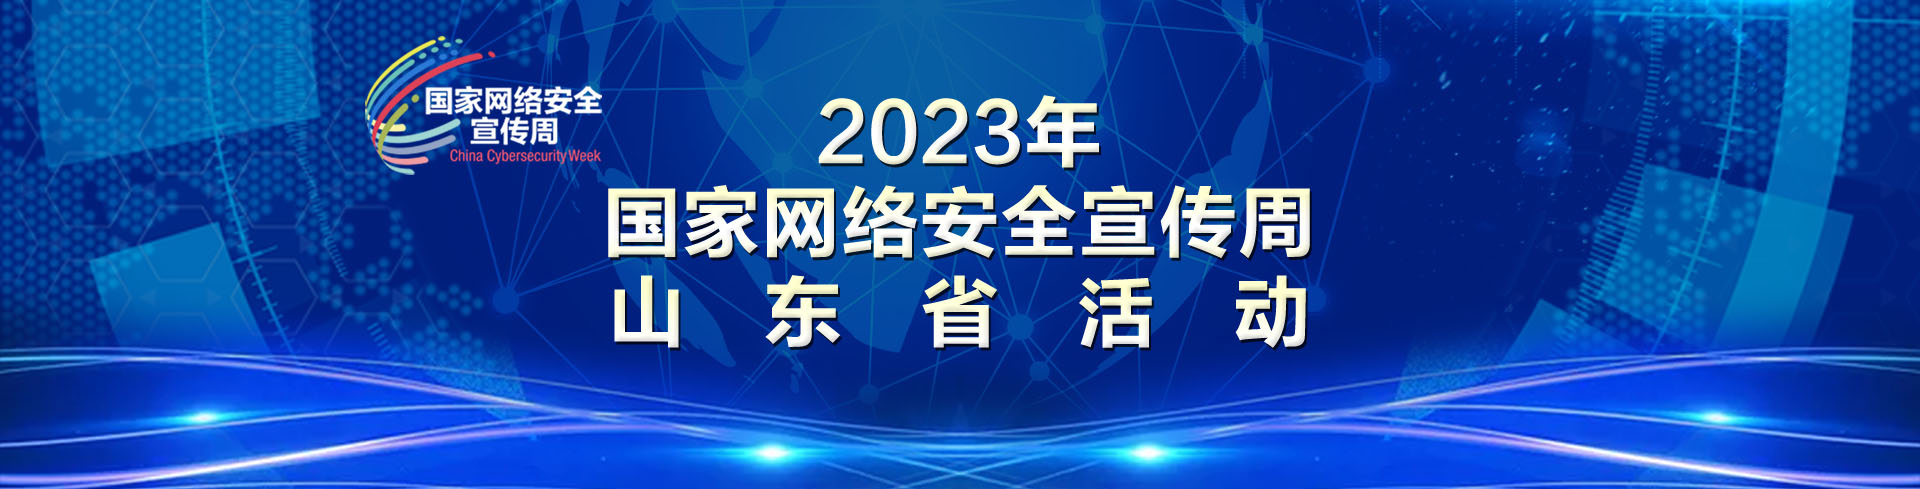 2023年国家网络安全宣传周山东省活动